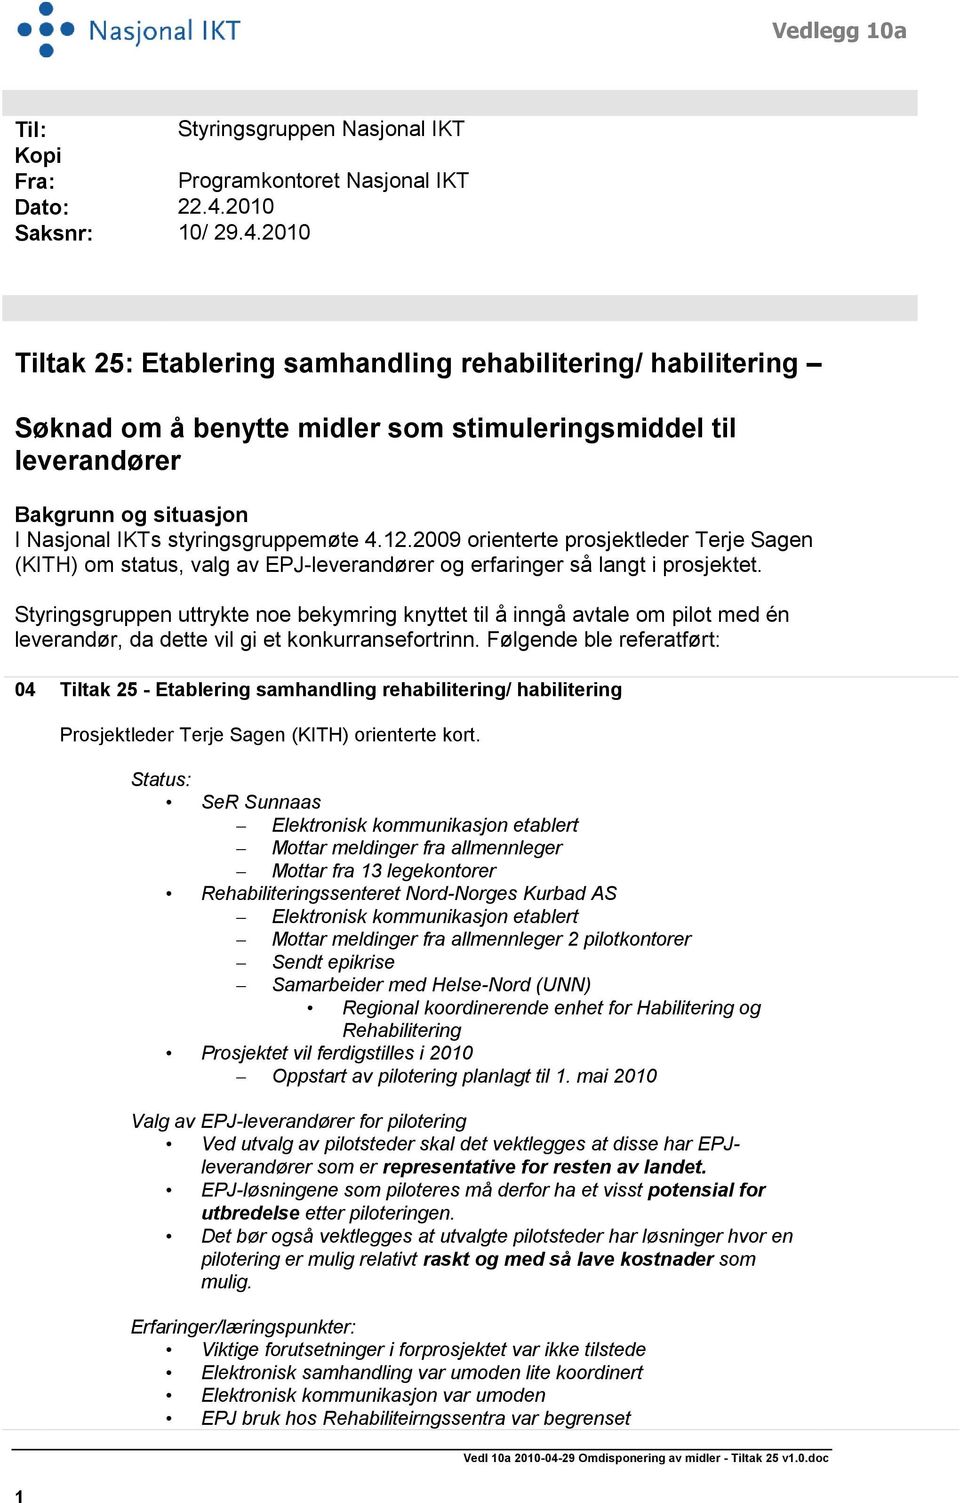 2010 Tiltak 25: Etablering samhandling rehabilitering/ habilitering Søknad om å benytte midler som stimuleringsmiddel til leverandører Bakgrunn og situasjon I Nasjonal IKTs styringsgruppemøte 4.12.